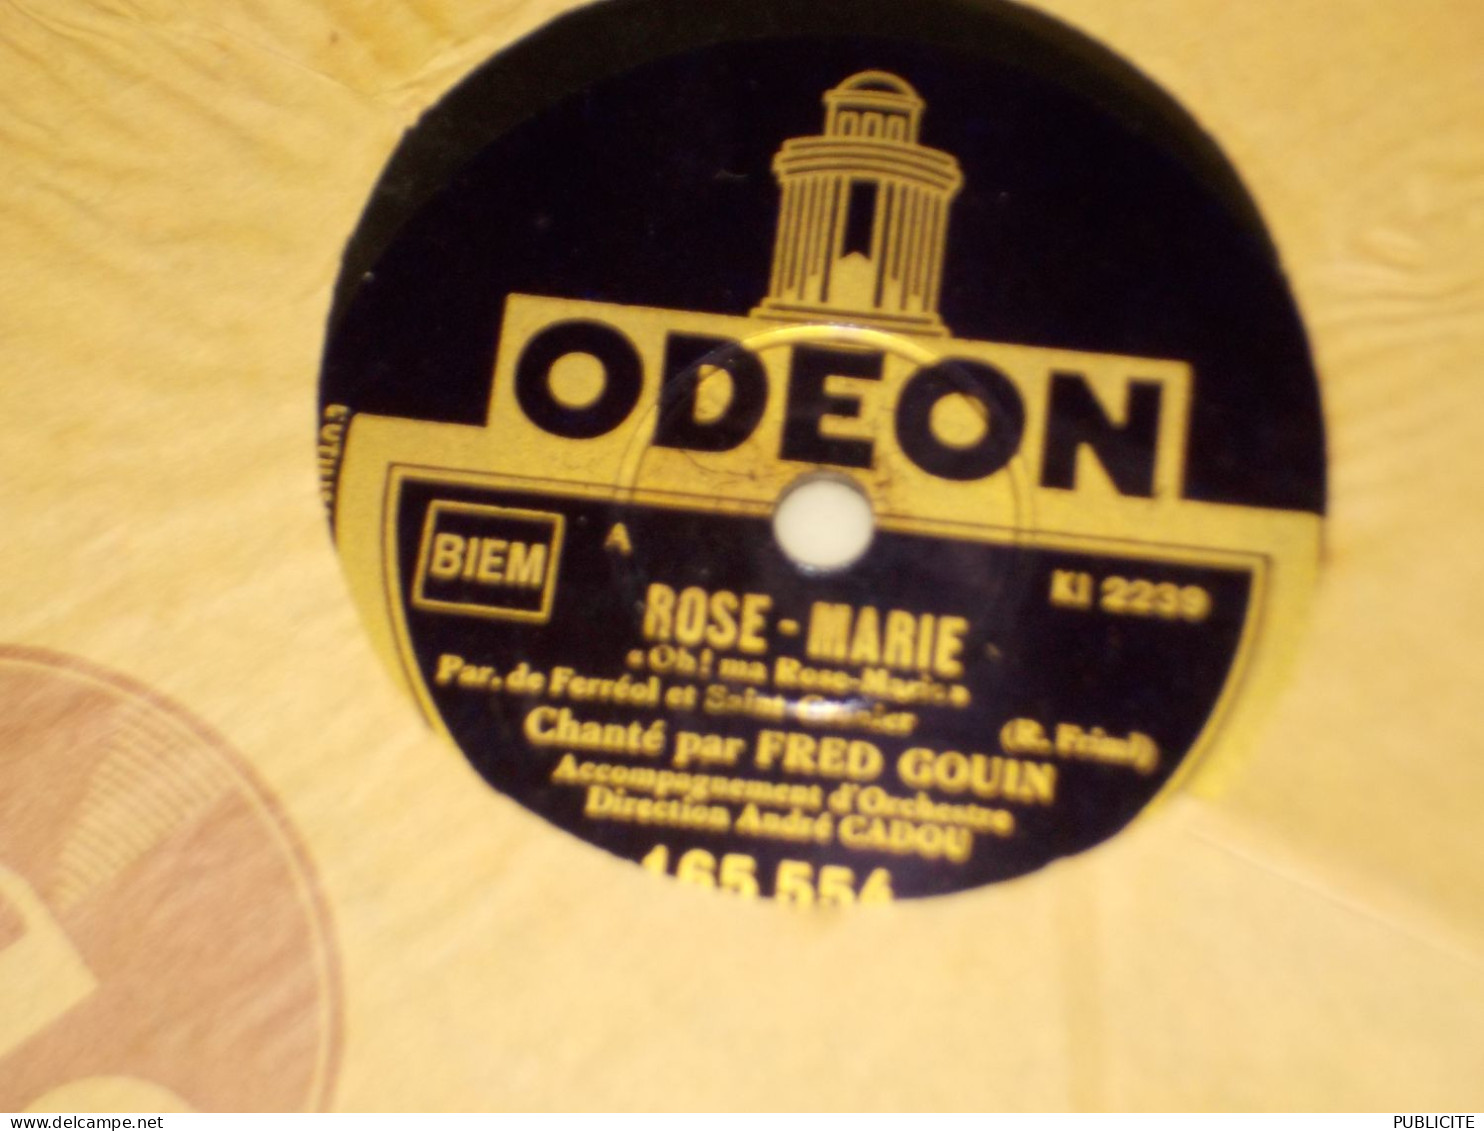 DISQUE 78 TOURS VINYL CHANTE PAR FRED GOUIN 1927 - 78 Rpm - Schellackplatten